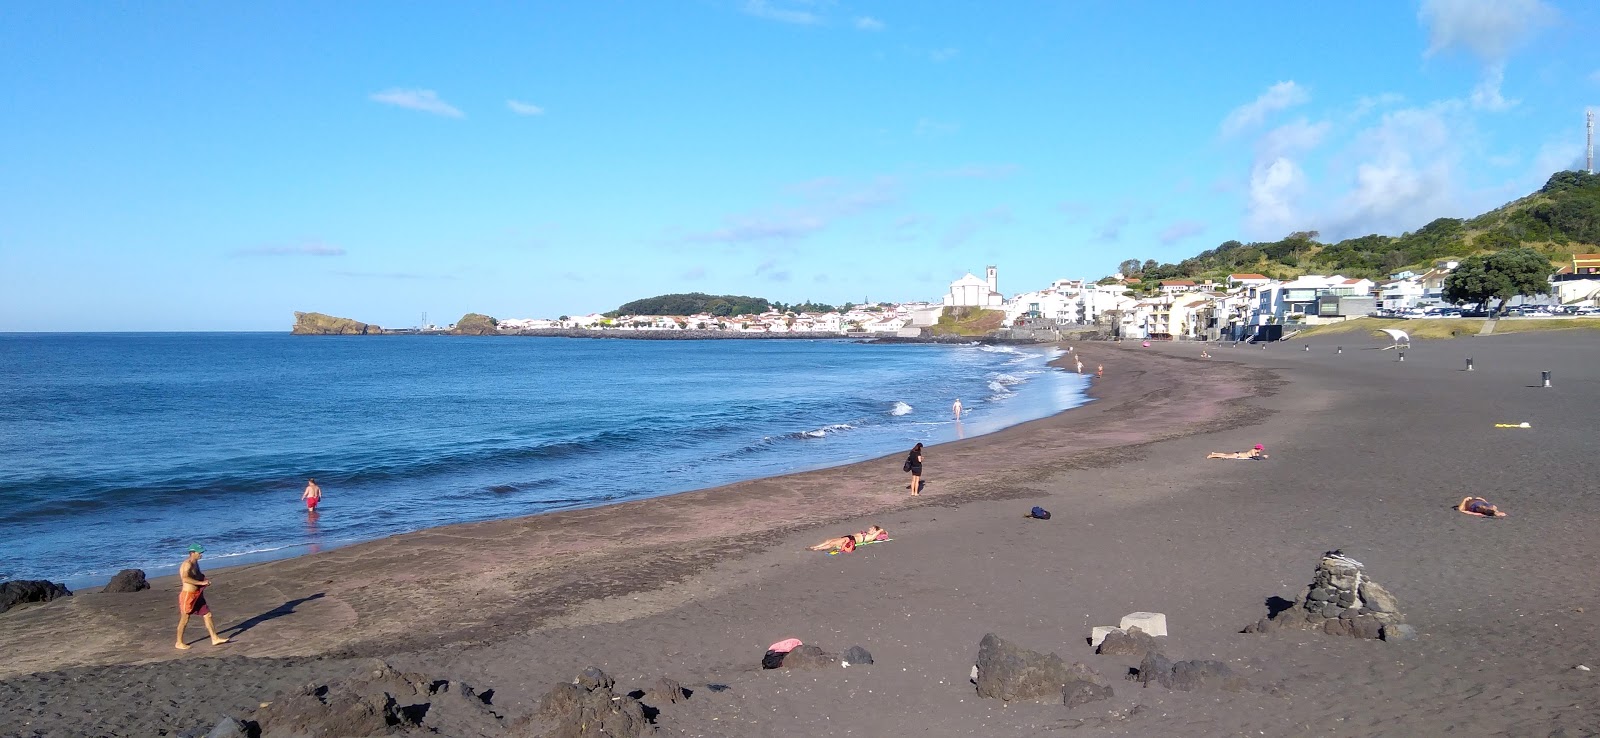 Praia das Milicias'in fotoğrafı - rahatlamayı sevenler arasında popüler bir yer